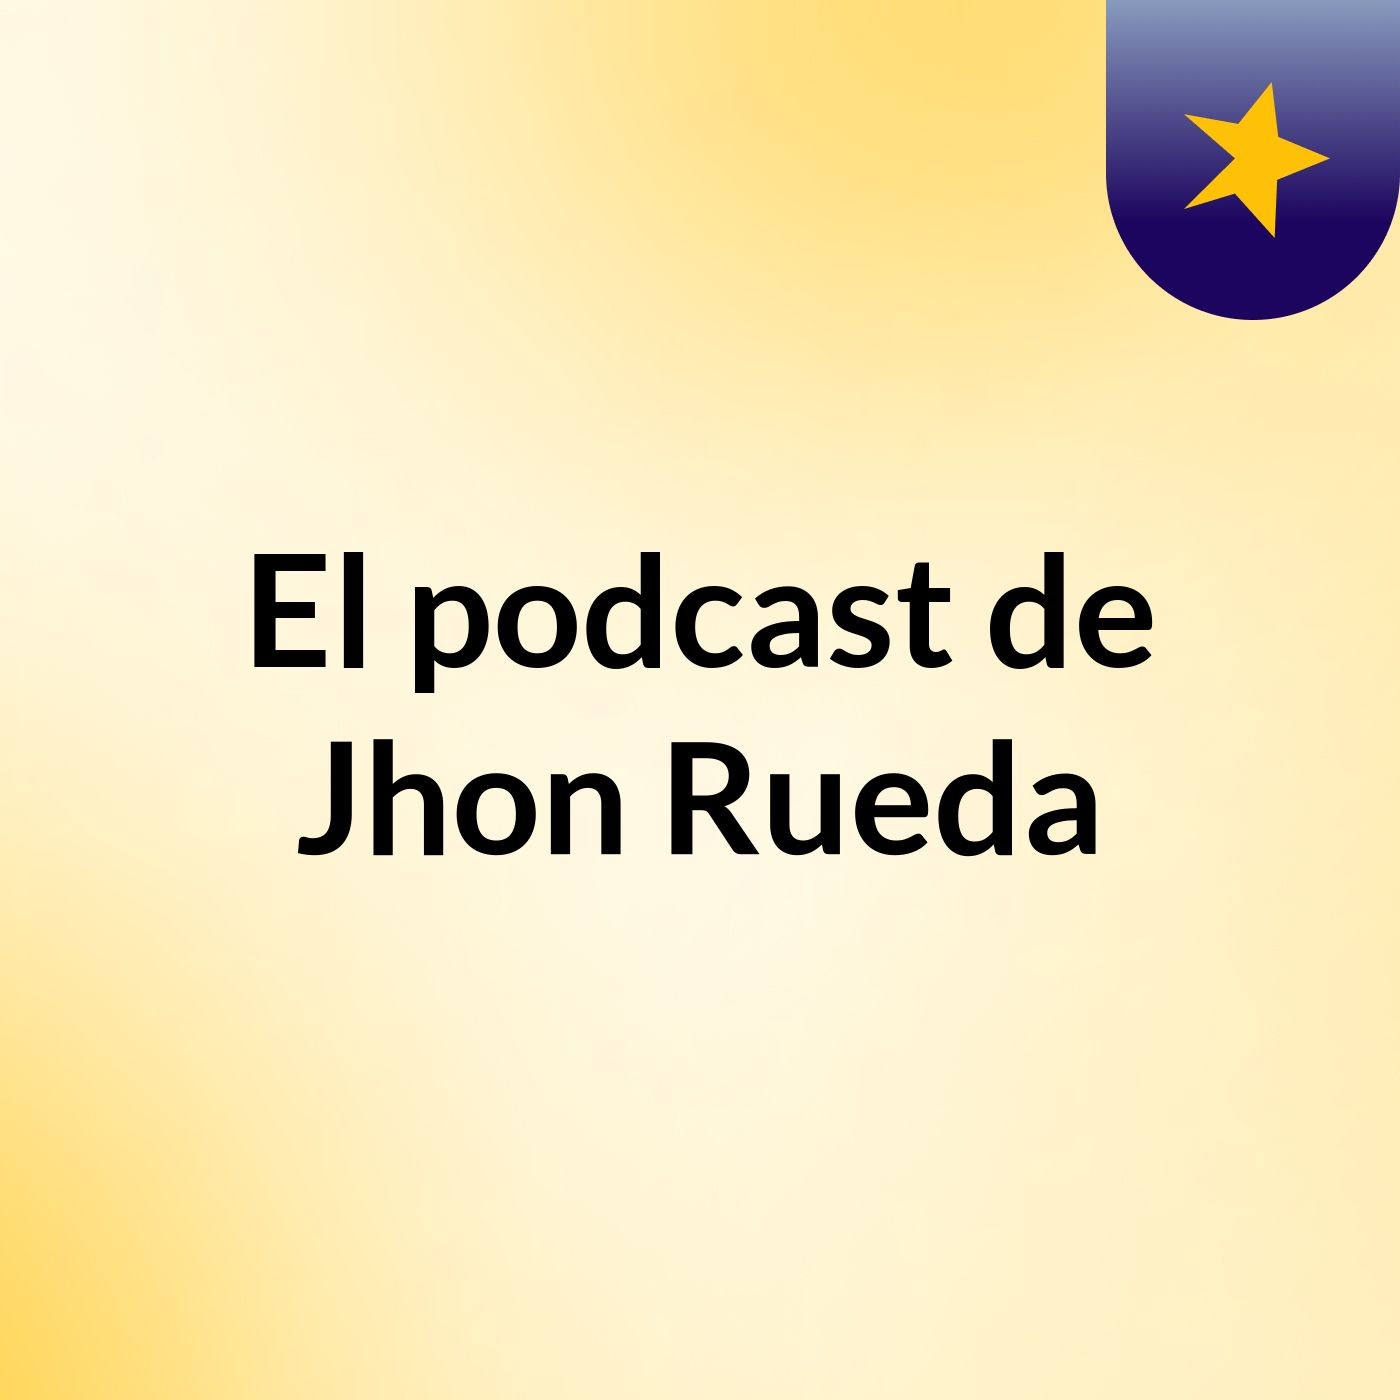 Empatia 35 - El podcast de Jhon Rueda